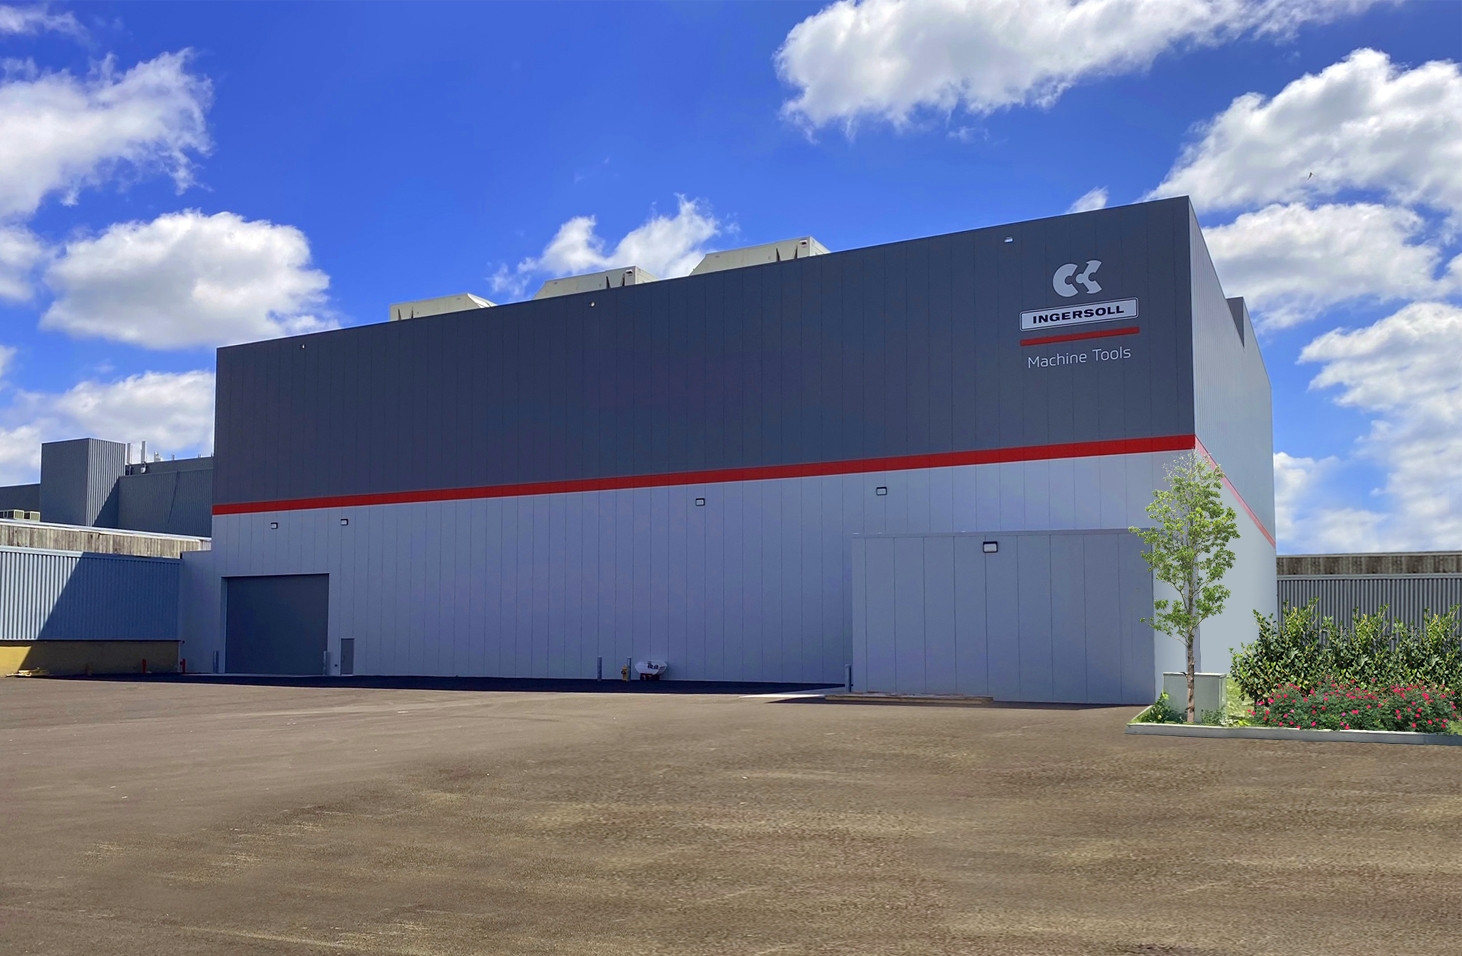 Das neue Gebäude von Ingersoll Machine Tools am Standort Rockford, Illinois bietet mehr Platz für Fertigung, Montage und das Testzentrum. 